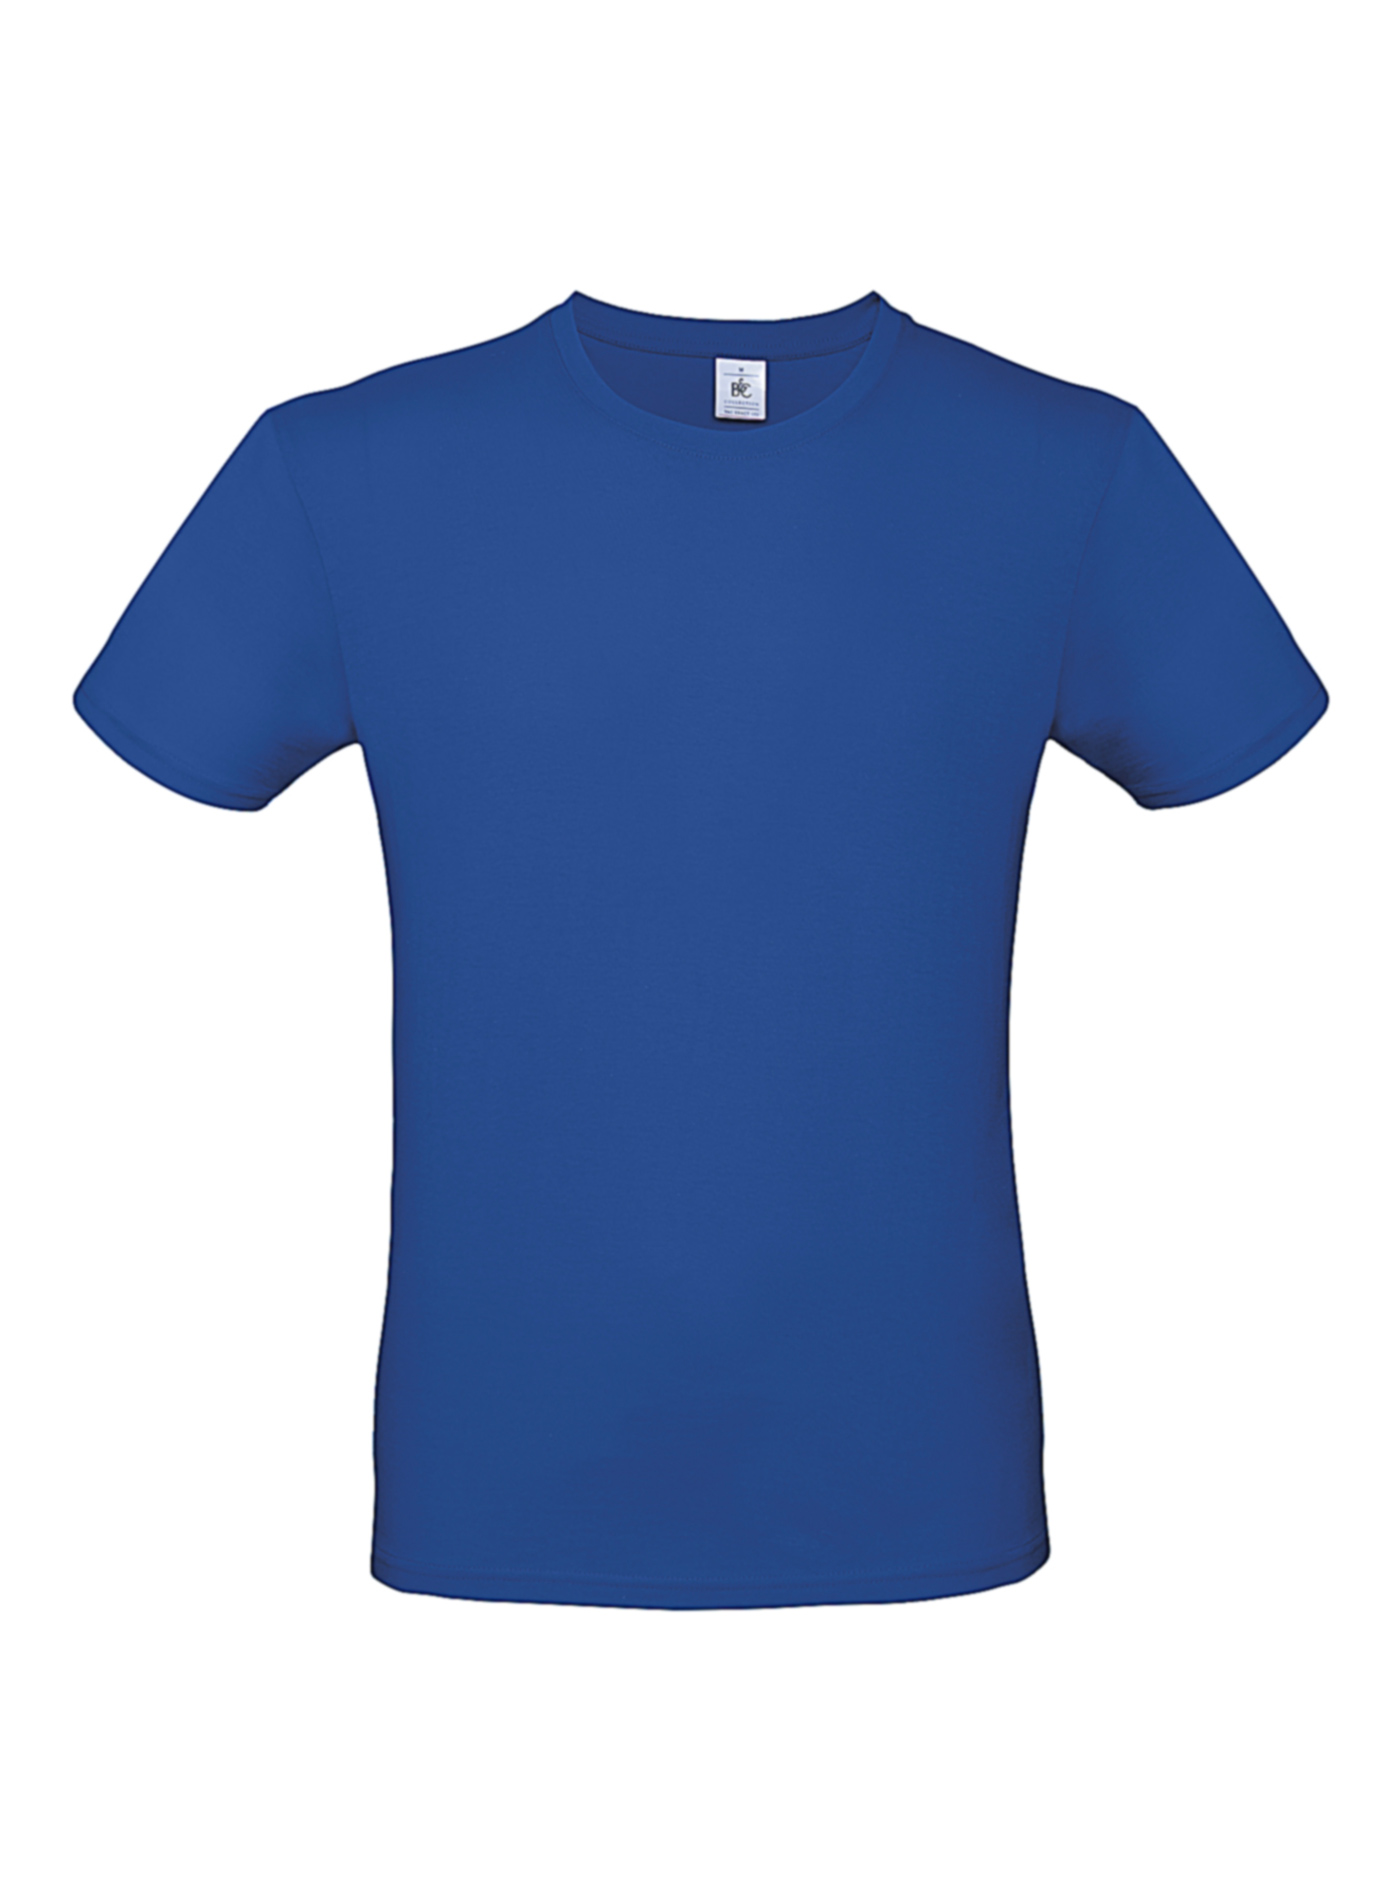 Pánské tričko B&C - královská modrá S